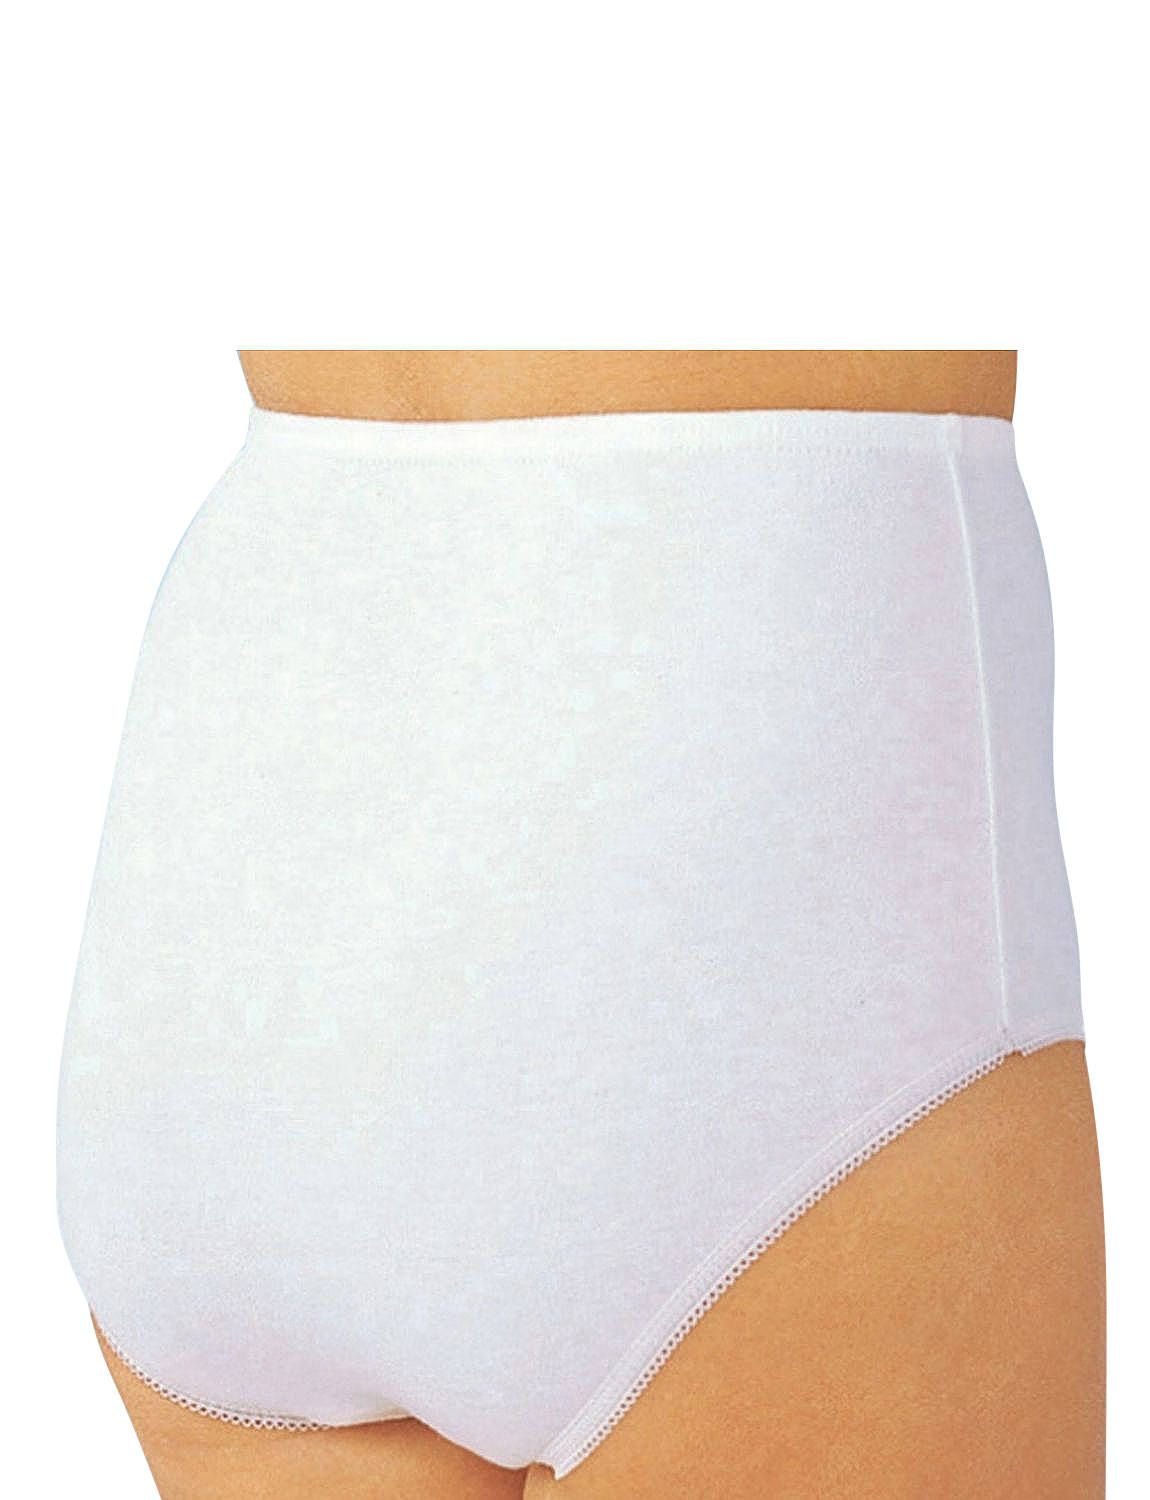 Women Cotton High Waist Panties With Zipper Pocket Briefs Underwear  Comfortable 